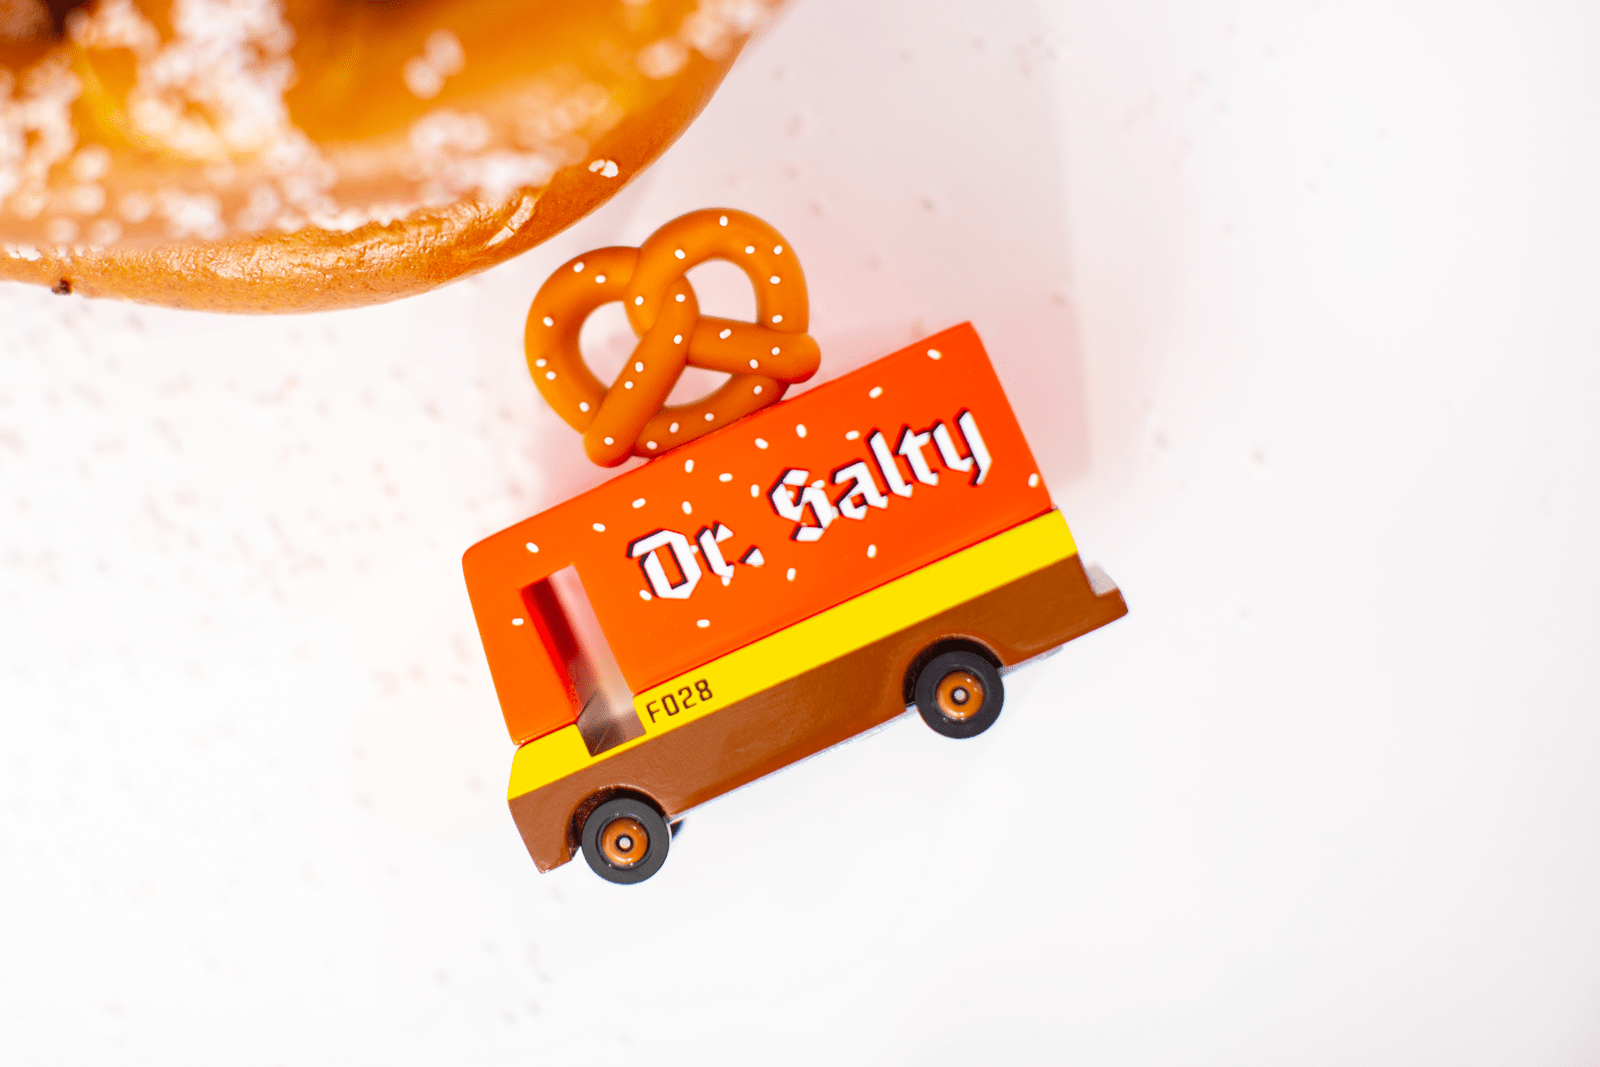 Candylab Toys toy Candylab Toys - Dr. Salty Pretzel Food Truck